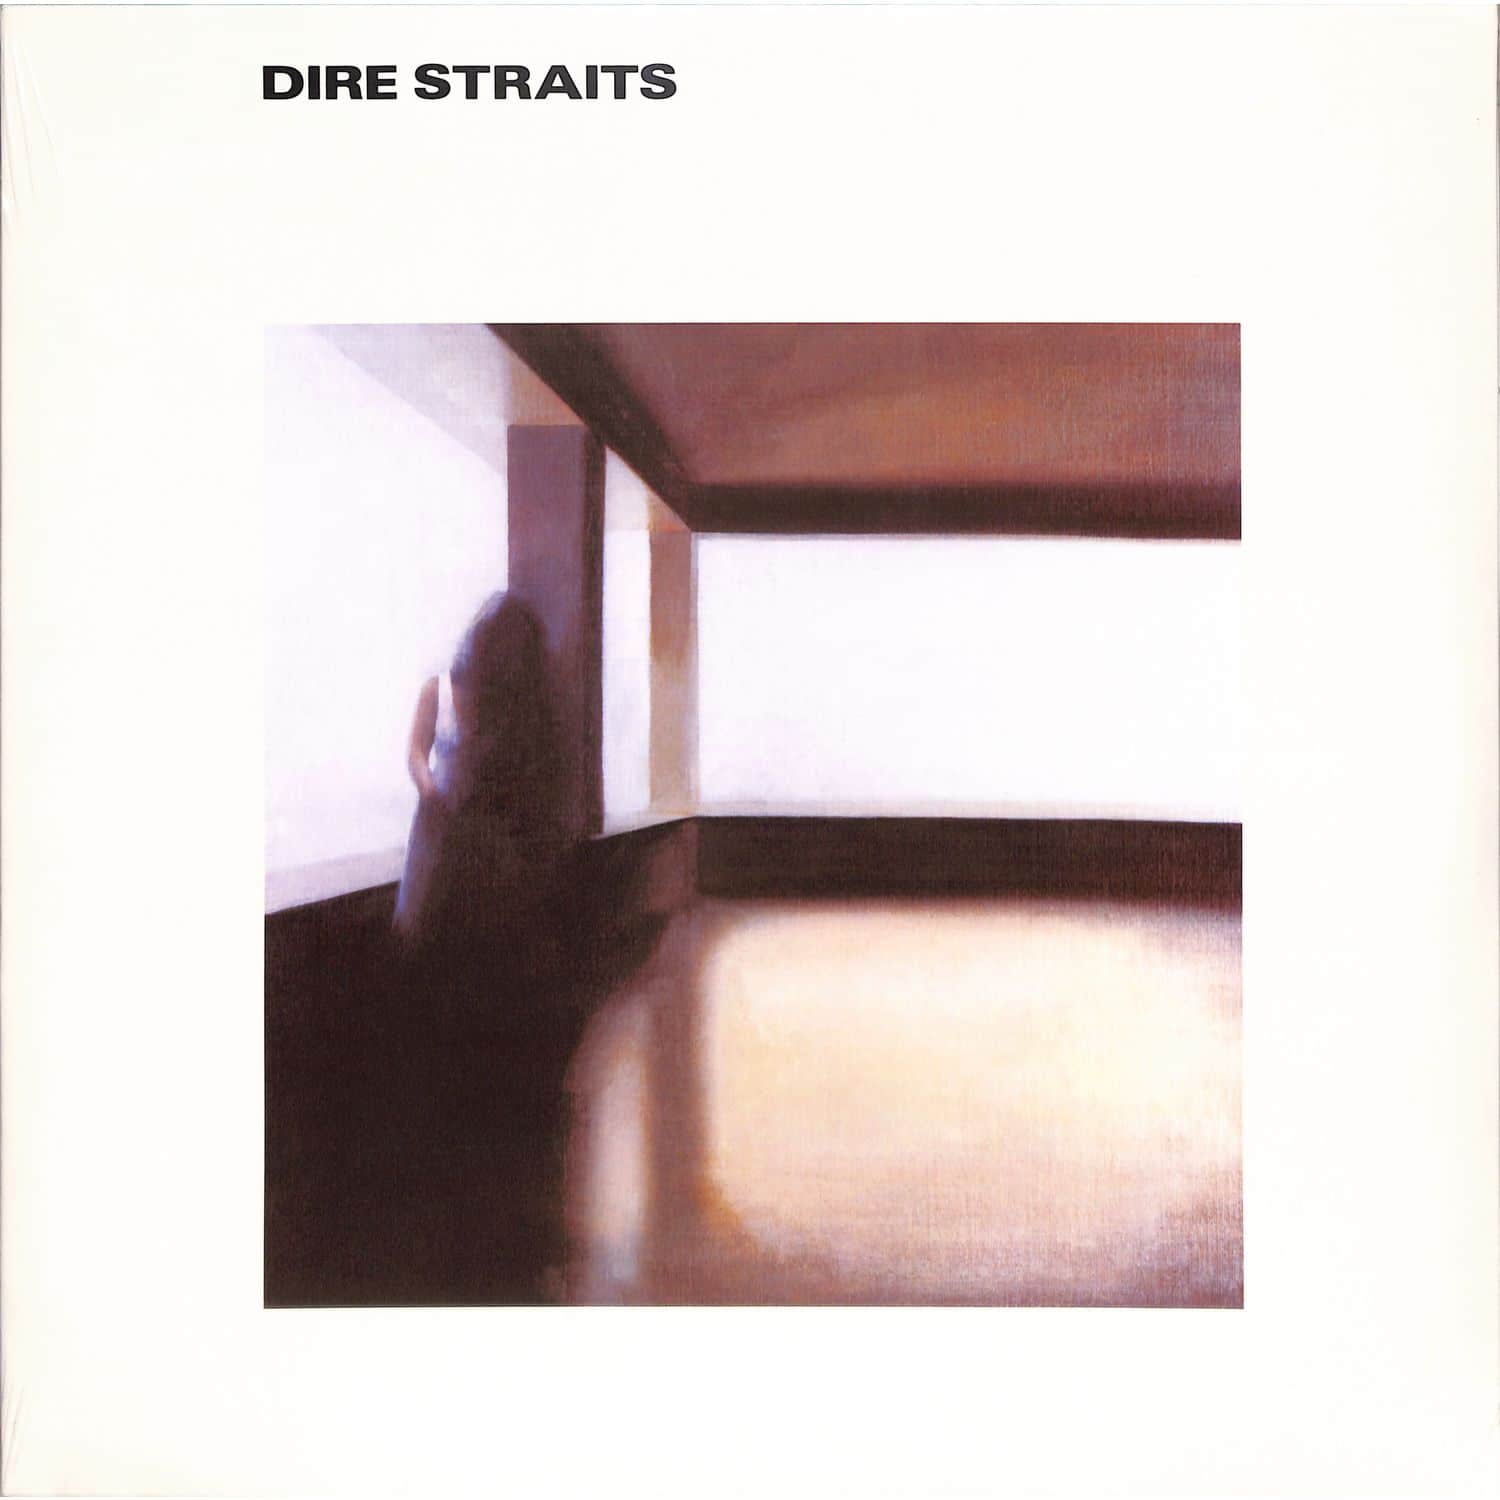 Dire Straits - DIRE STRAITS 